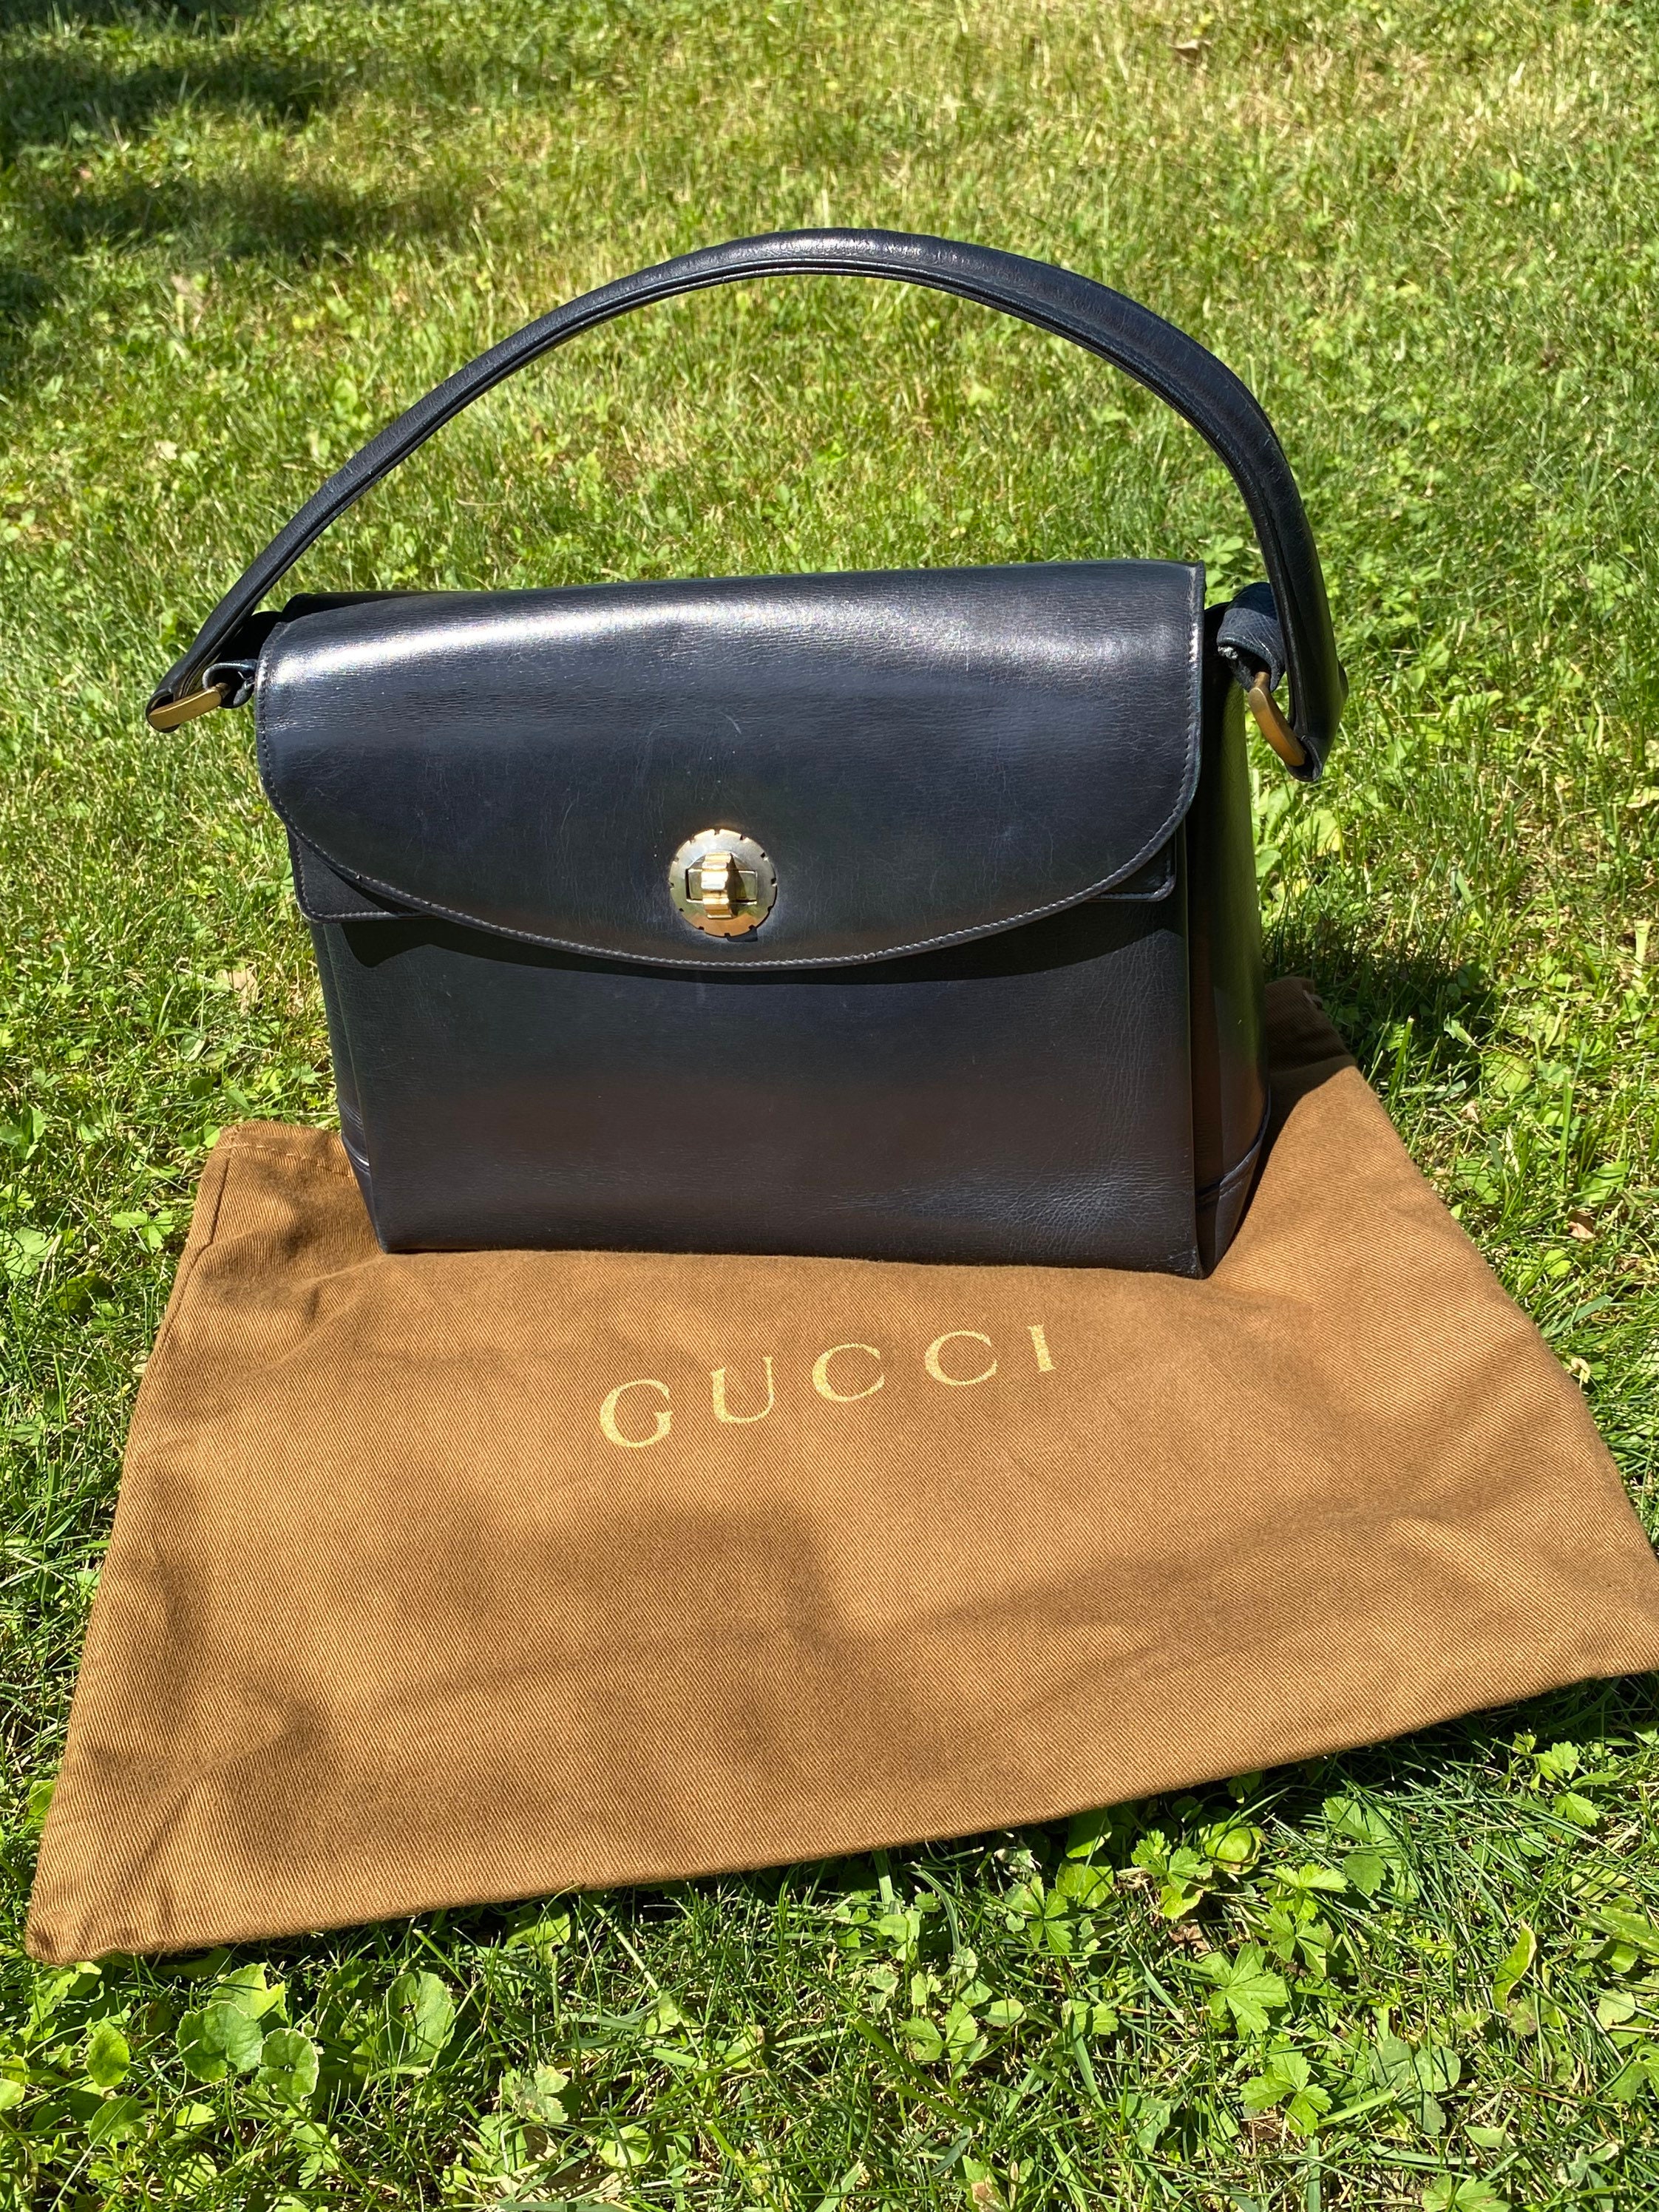 gucci vintage bag